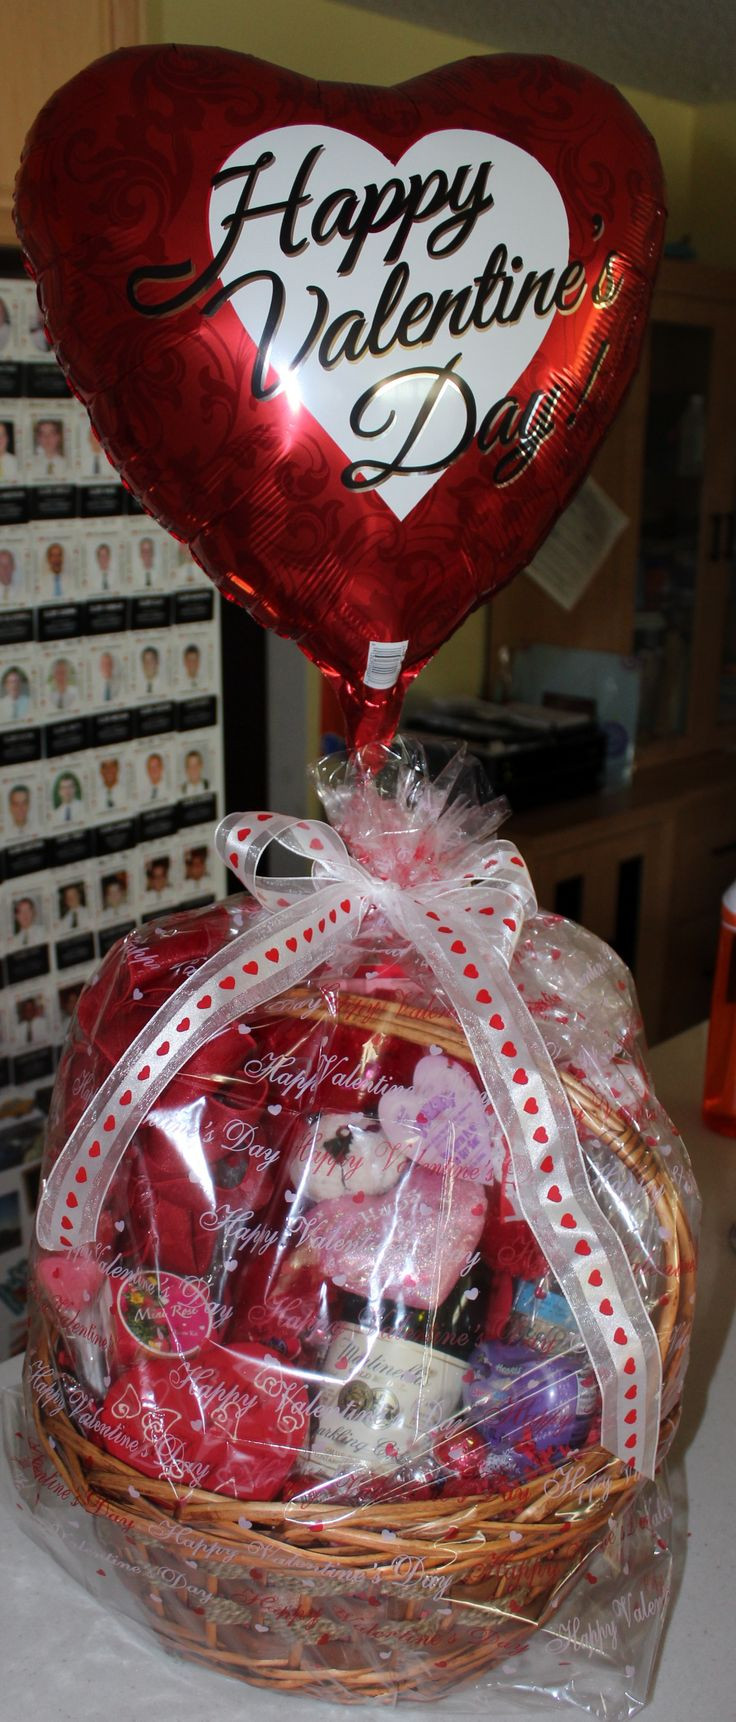 Mens Valentines Gift Basket Ideas
 Best 25 Valentine t baskets ideas on Pinterest